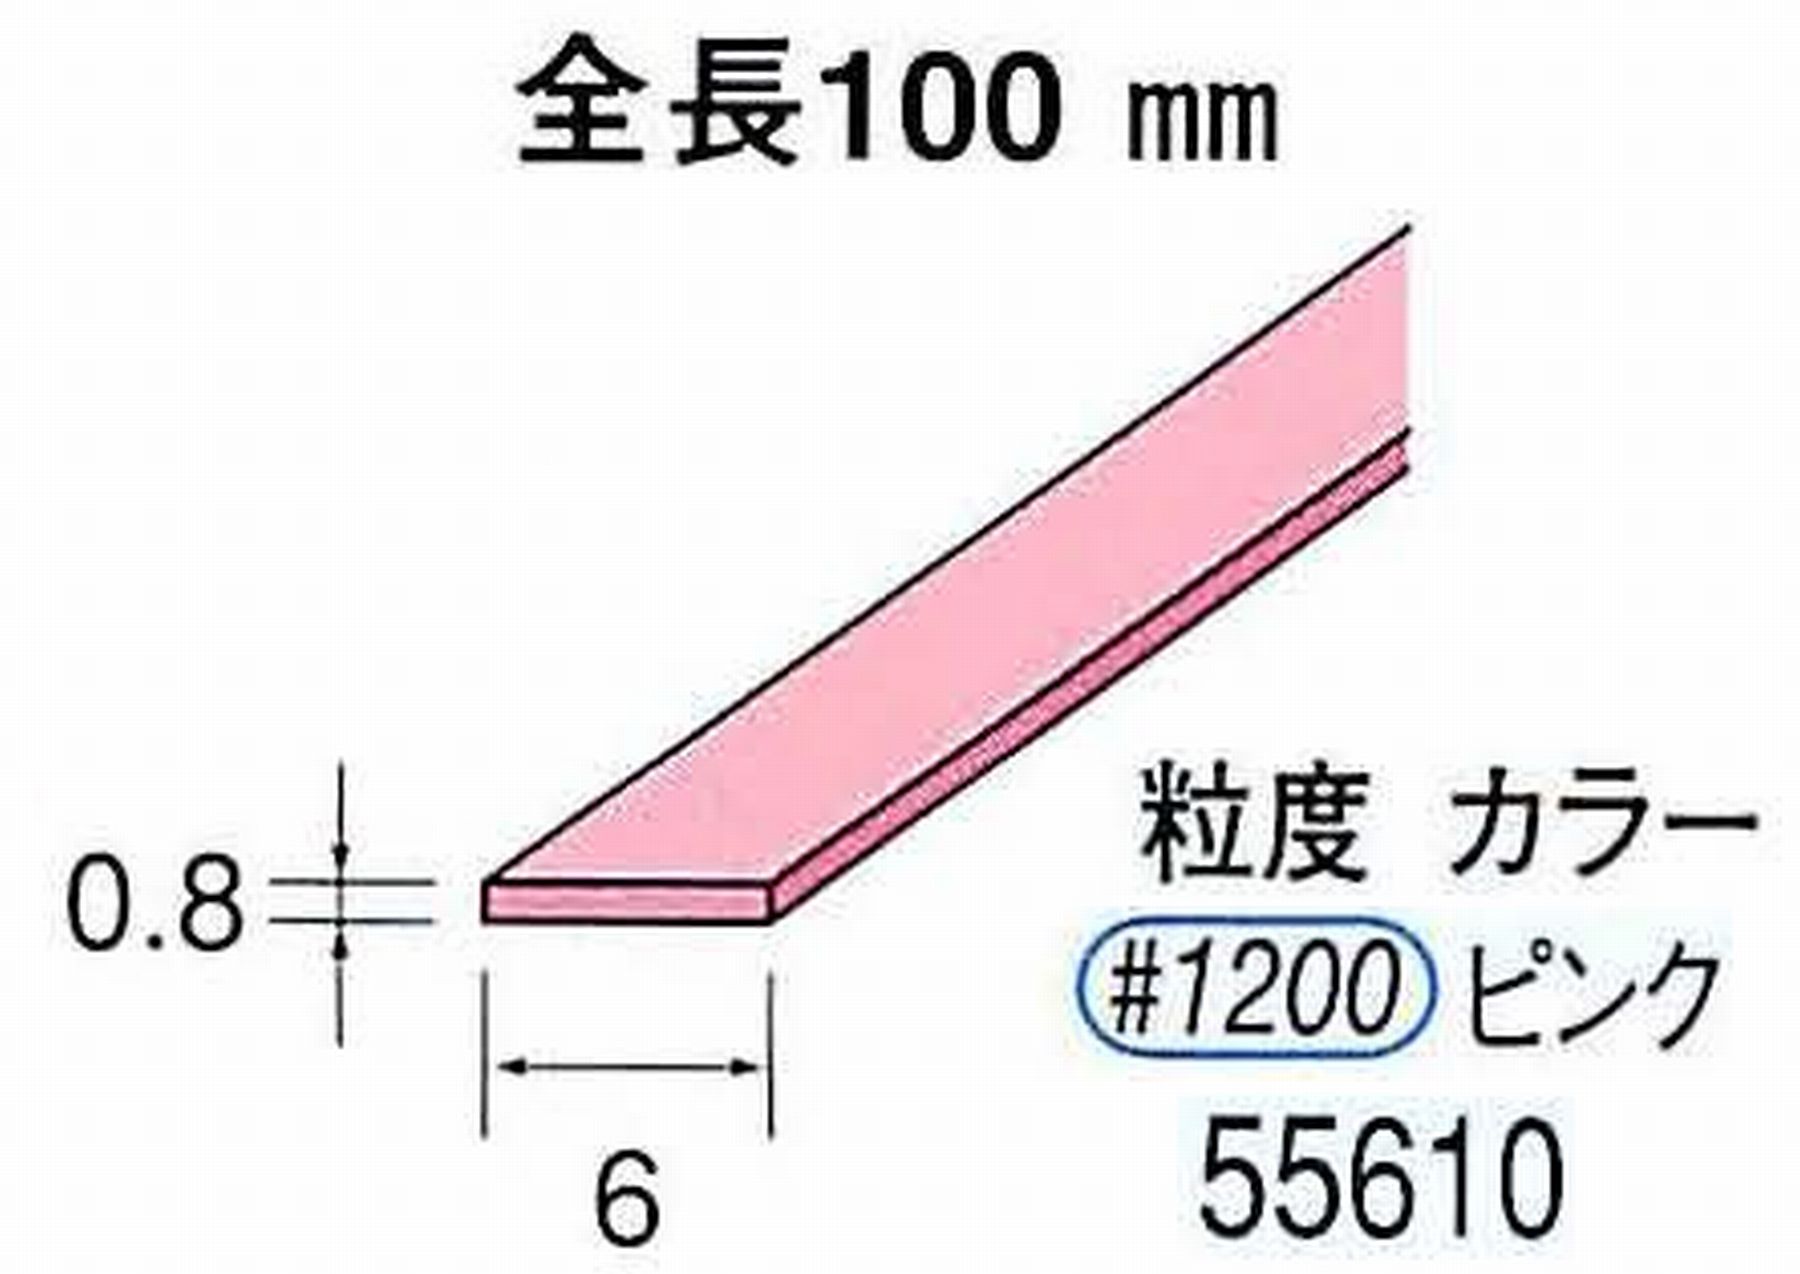 ナカニシ/NAKANISHI セラファイバー砥石 全長100mm ピンク 55610